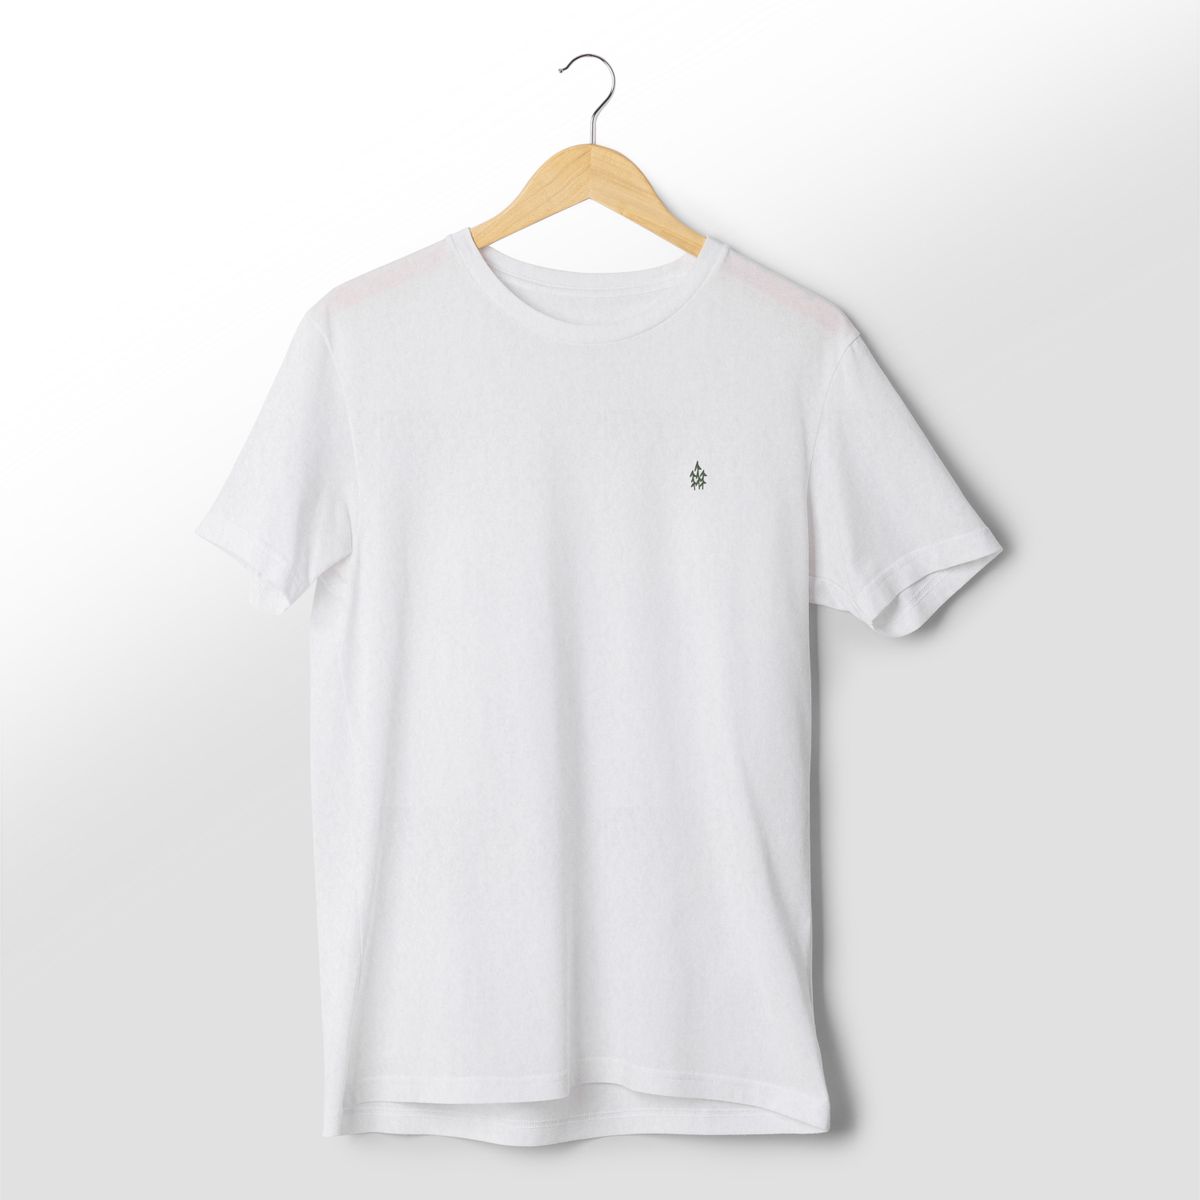 Nome do produto: Camiseta Pima - Icônico